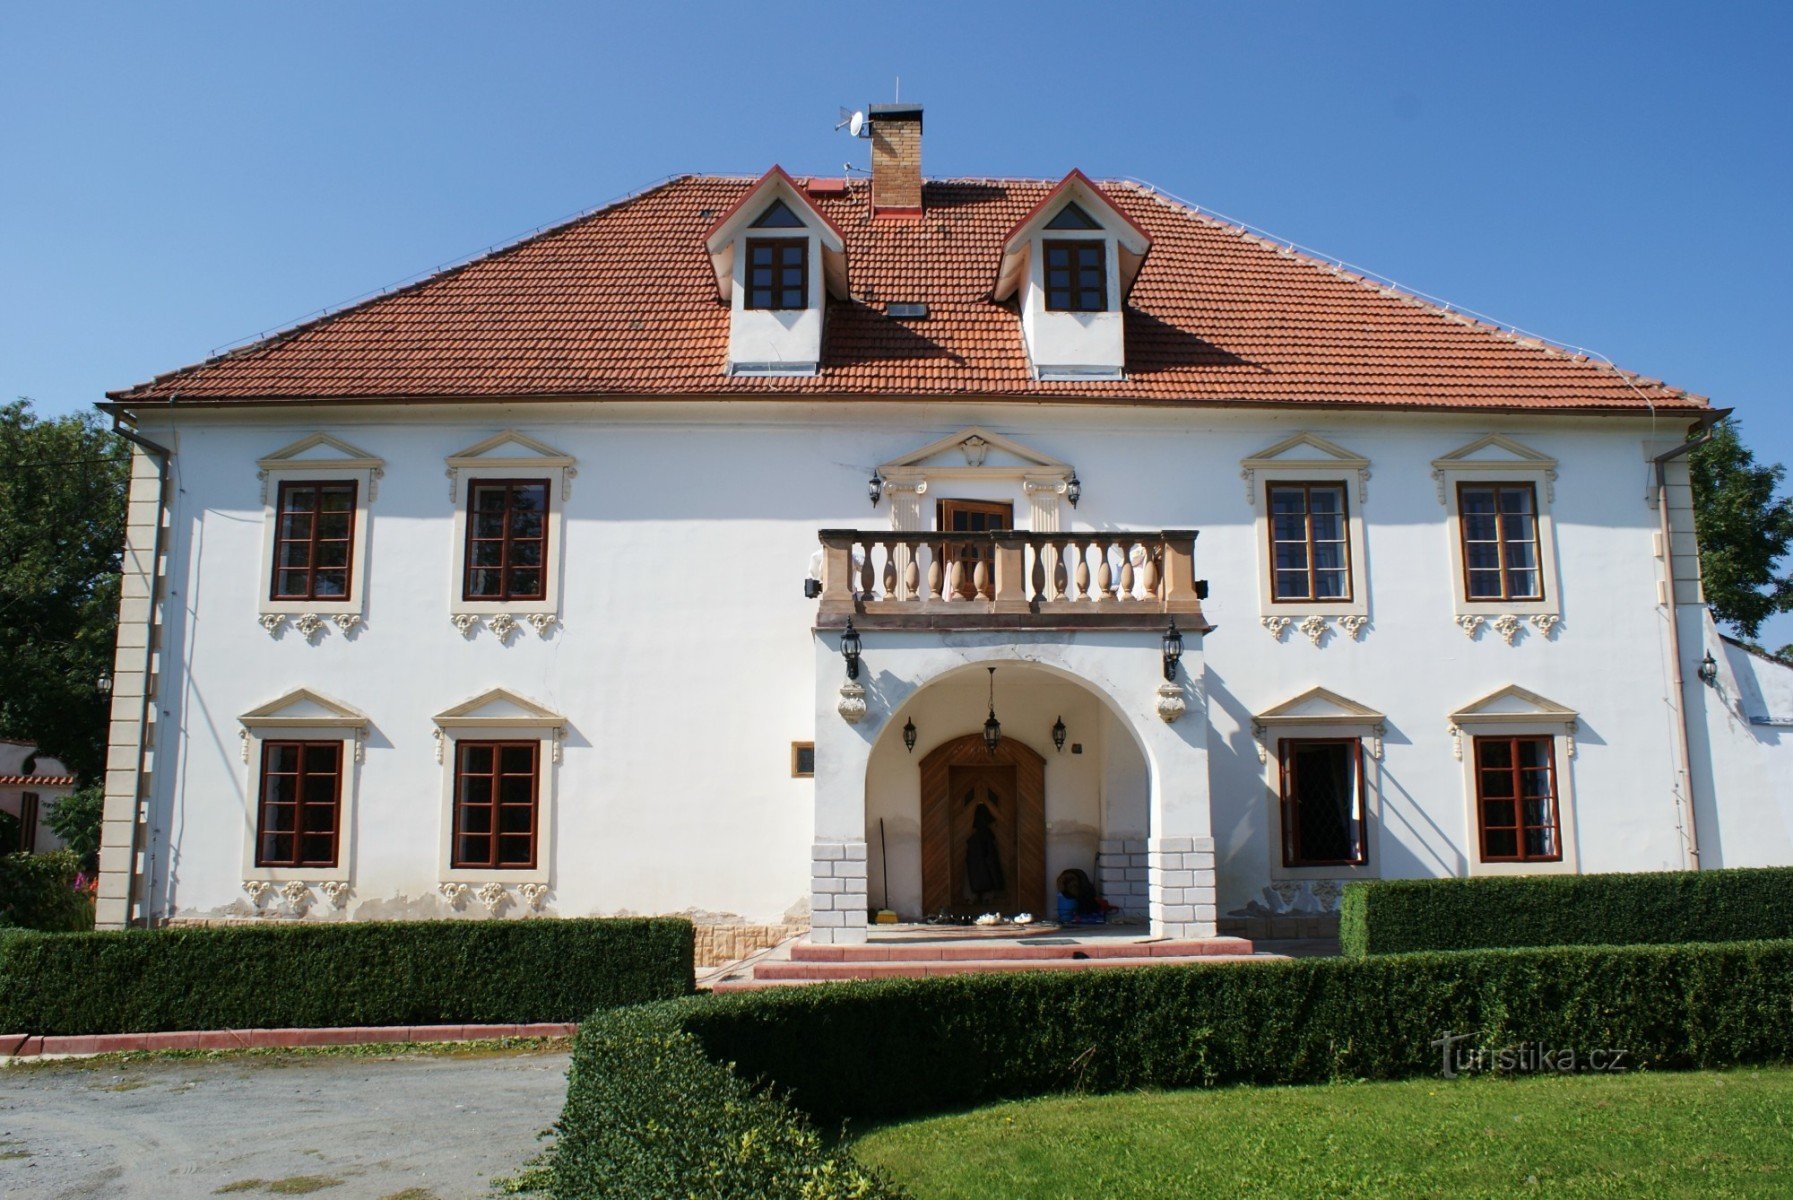 castel baroc - Horní dvůr